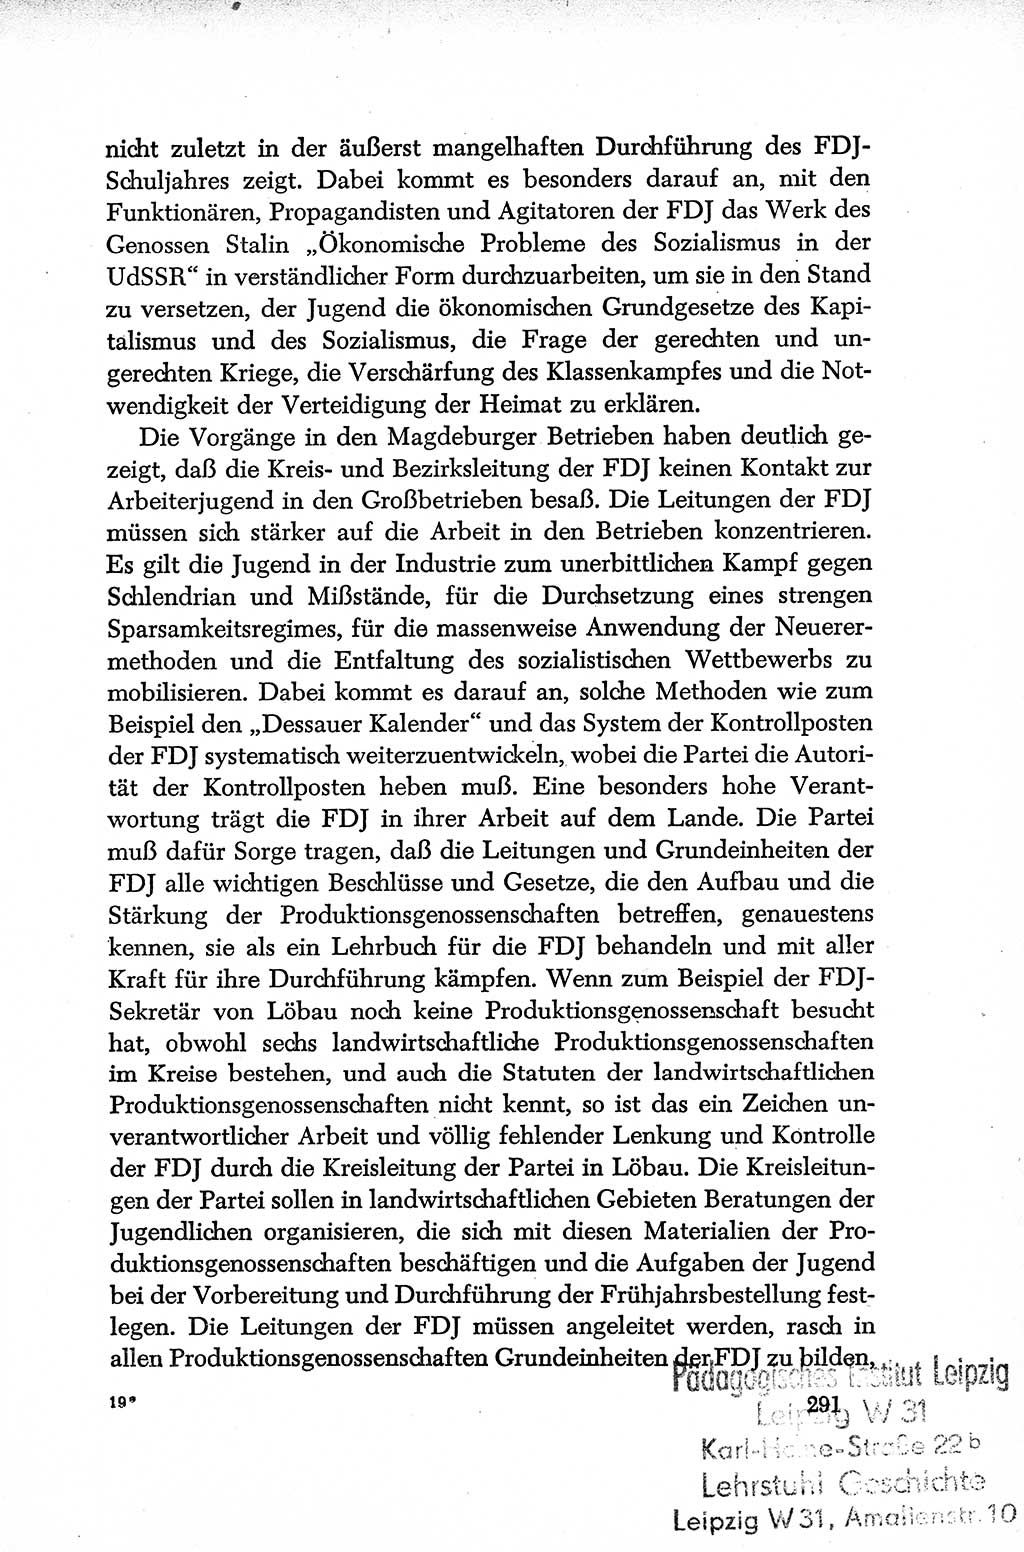 Dokumente der Sozialistischen Einheitspartei Deutschlands (SED) [Deutsche Demokratische Republik (DDR)] 1952-1953, Seite 291 (Dok. SED DDR 1952-1953, S. 291)